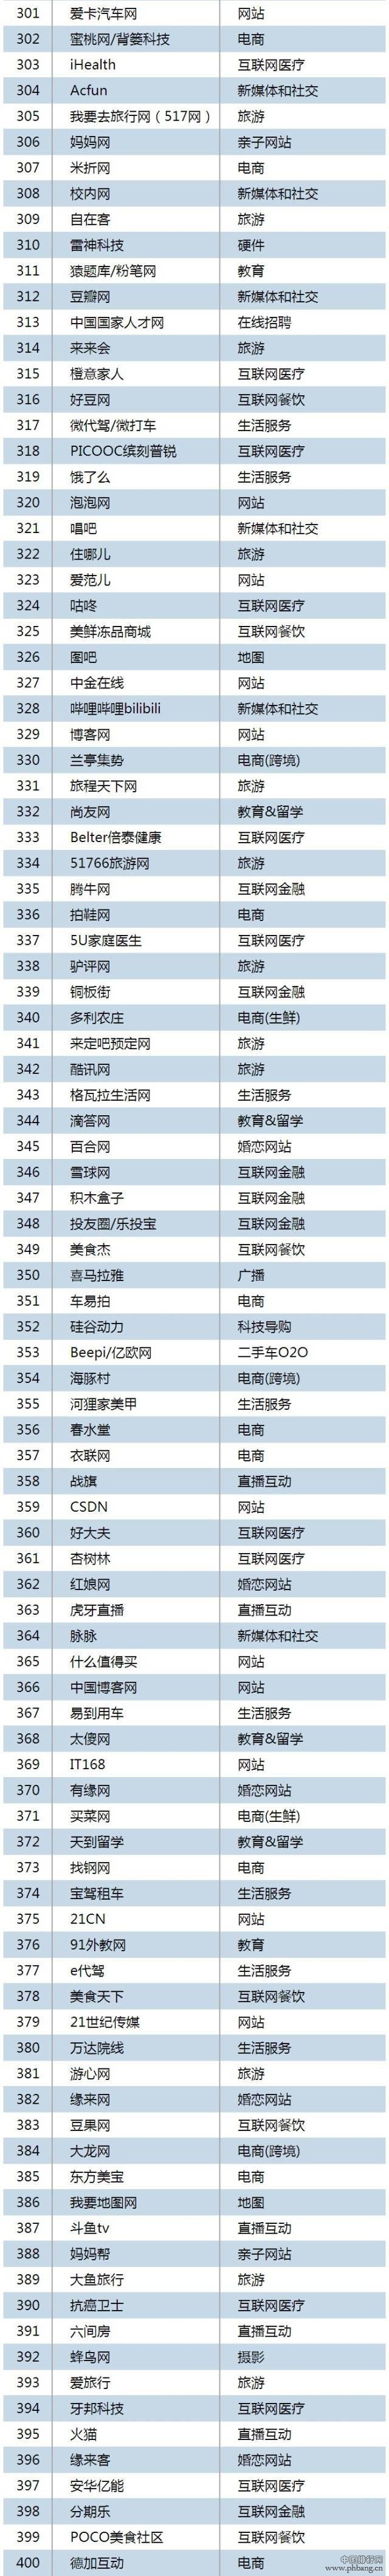 2015年一季度中国互联网Top500排行榜